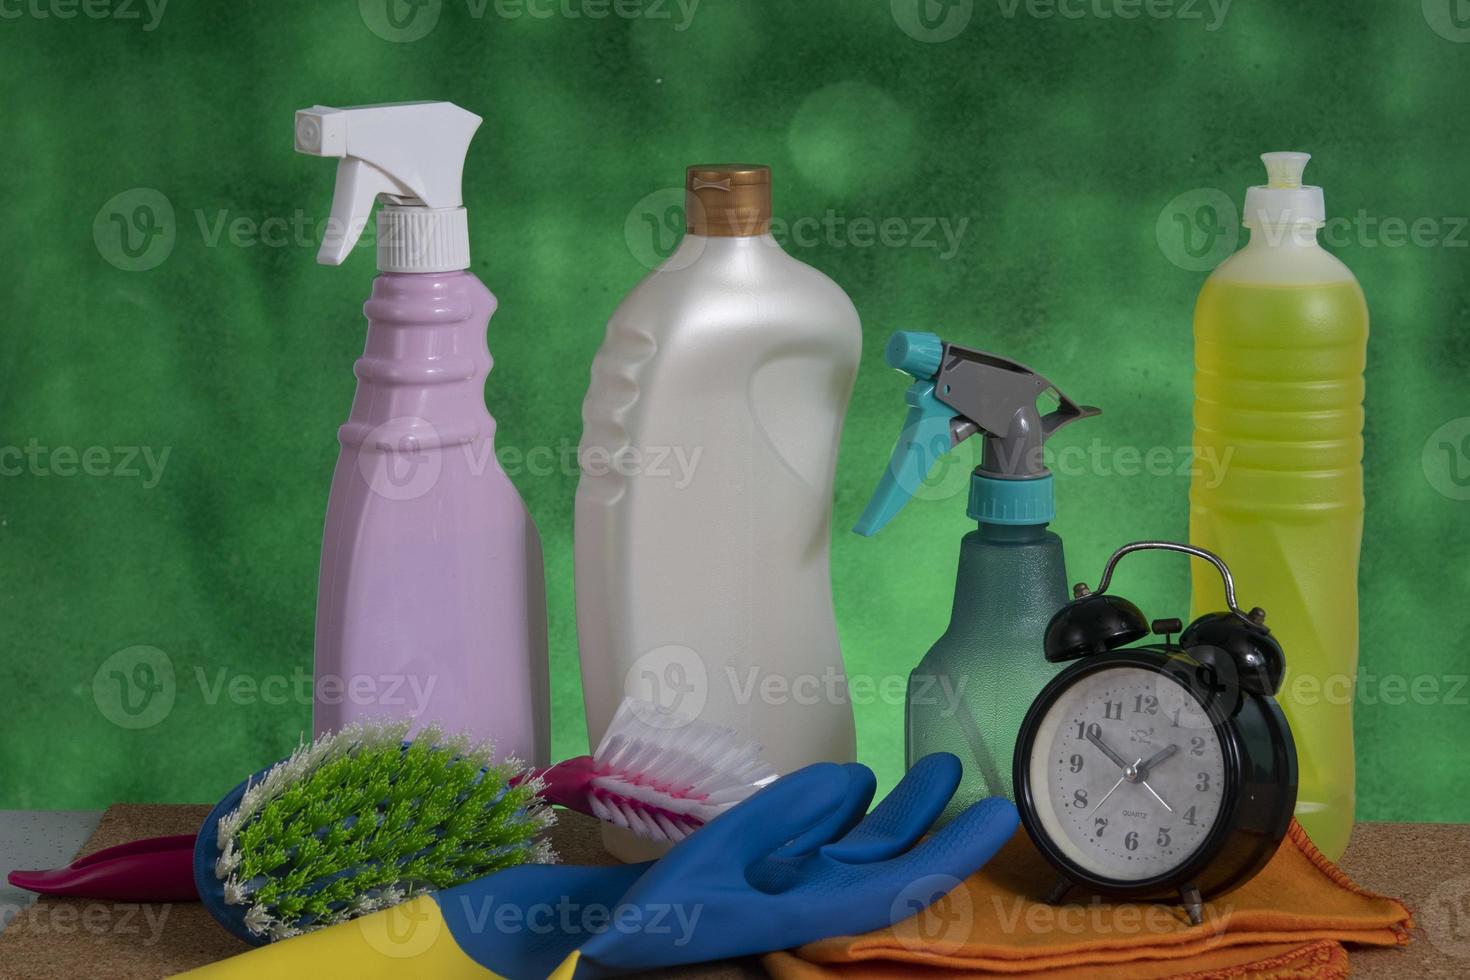 mand met schoonmaak producten voor huis hygiëne gebruik foto